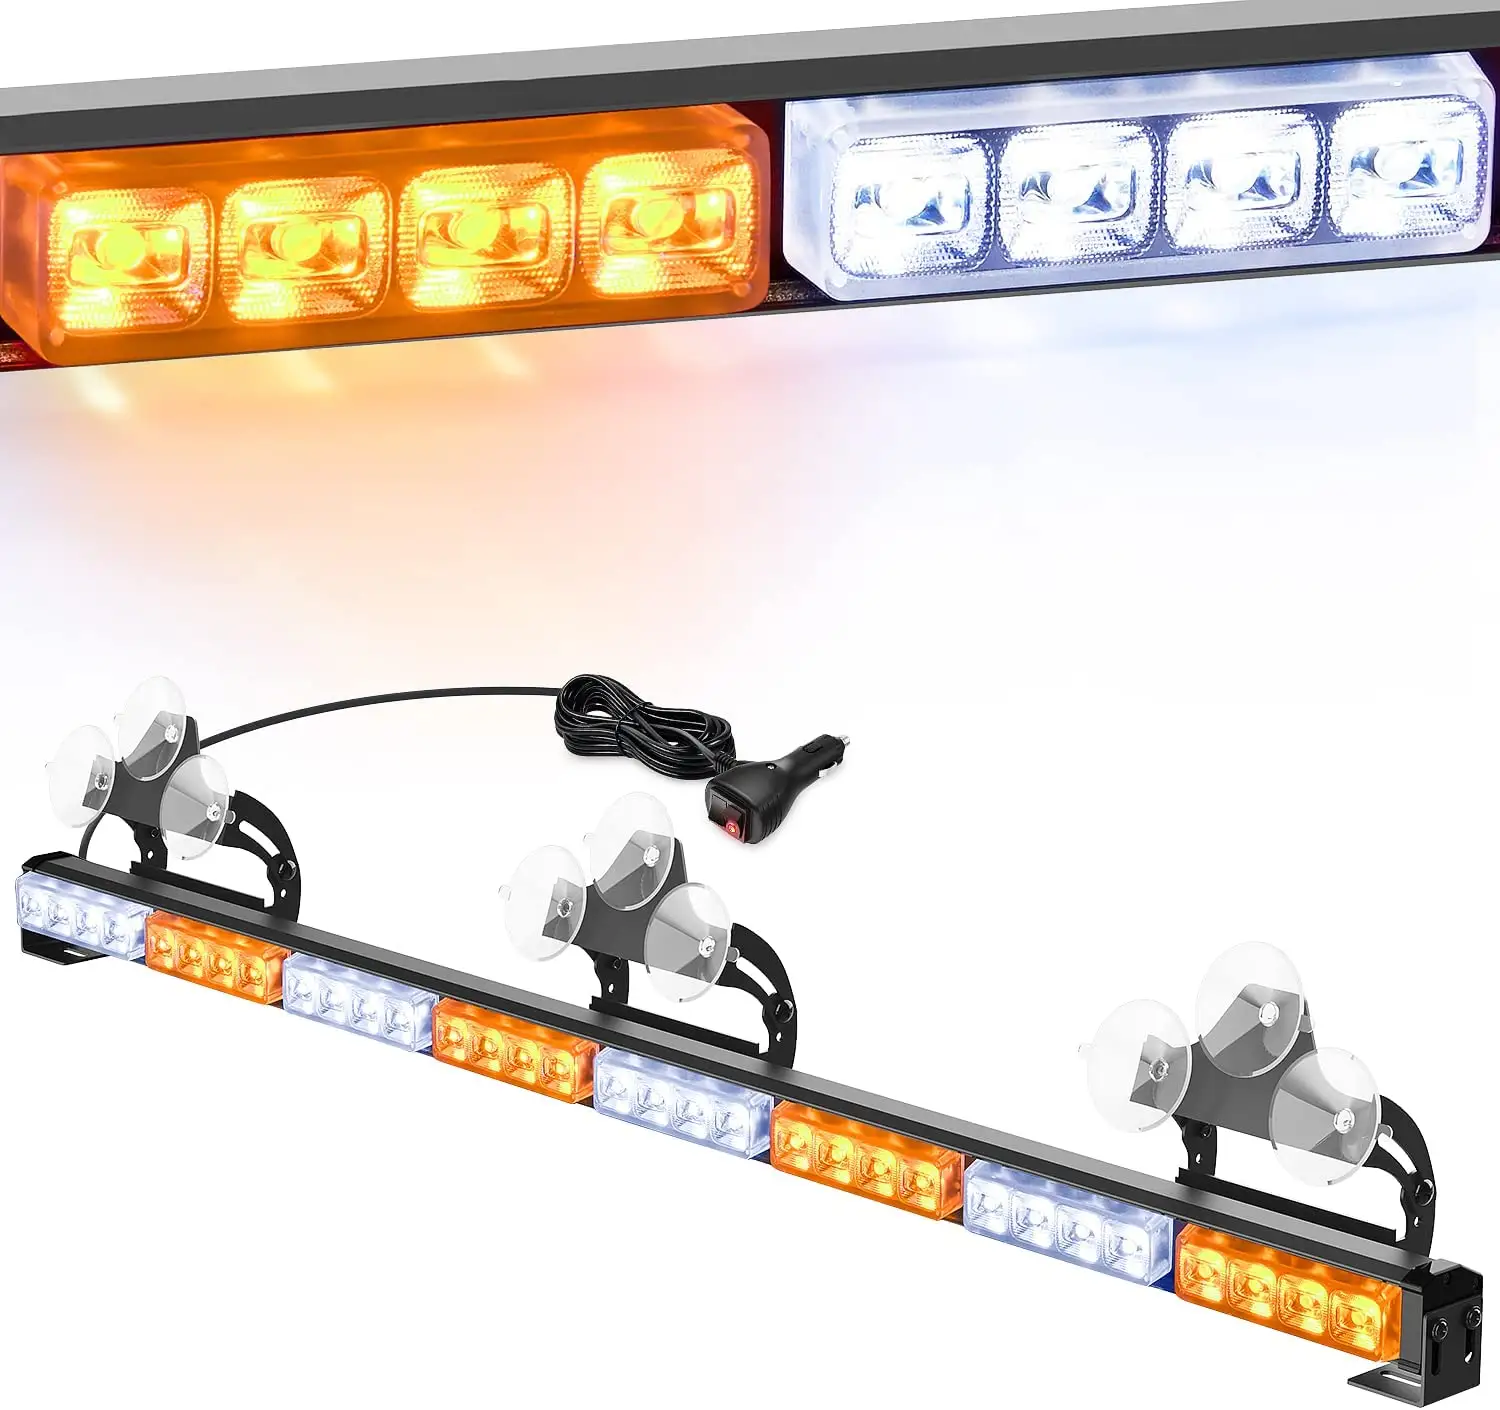 Super Brilhante 32 LED 35 Polegada Pára-brisas De Emergência Strobe luz Bar Magro Luzes De Advertência De Segurança para Caminhão De Tráfego